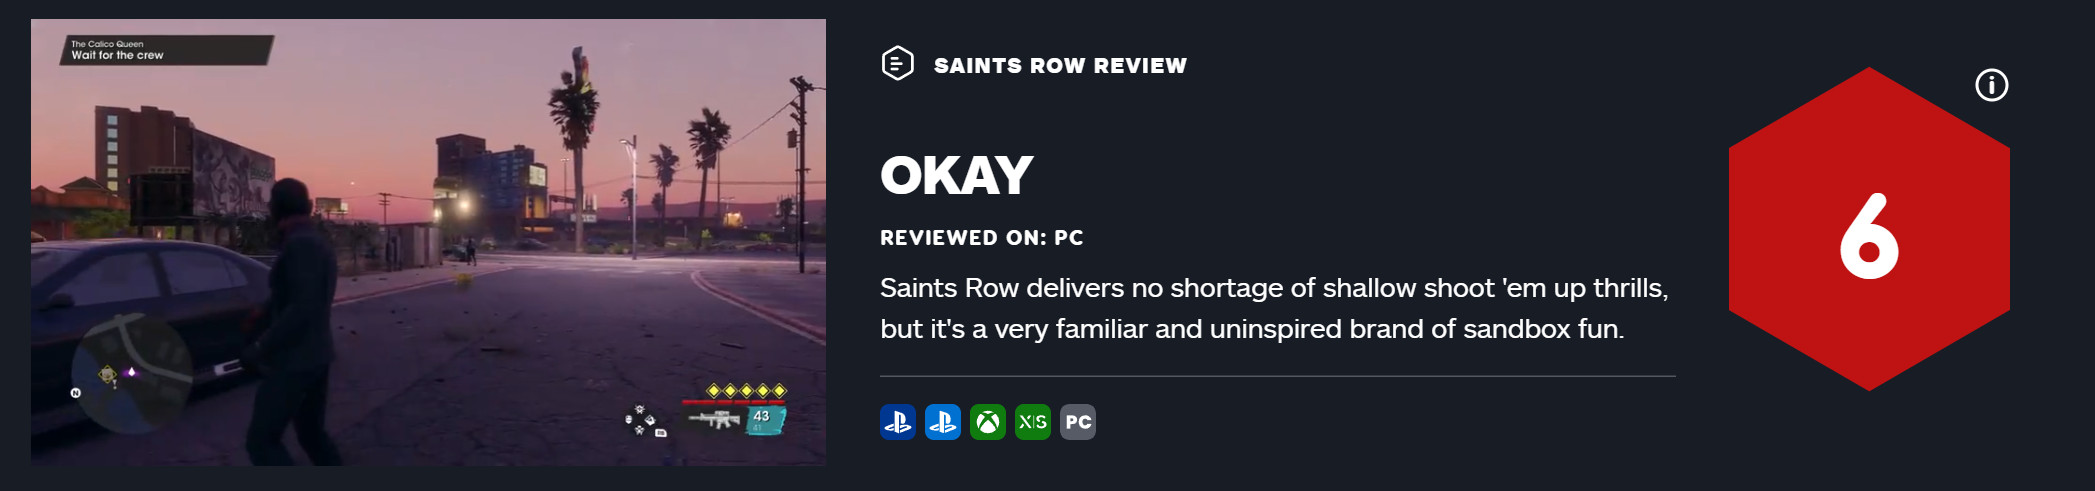 《黑道圣徒：重启版》首批媒体评分解禁 game给出8.5高分评价